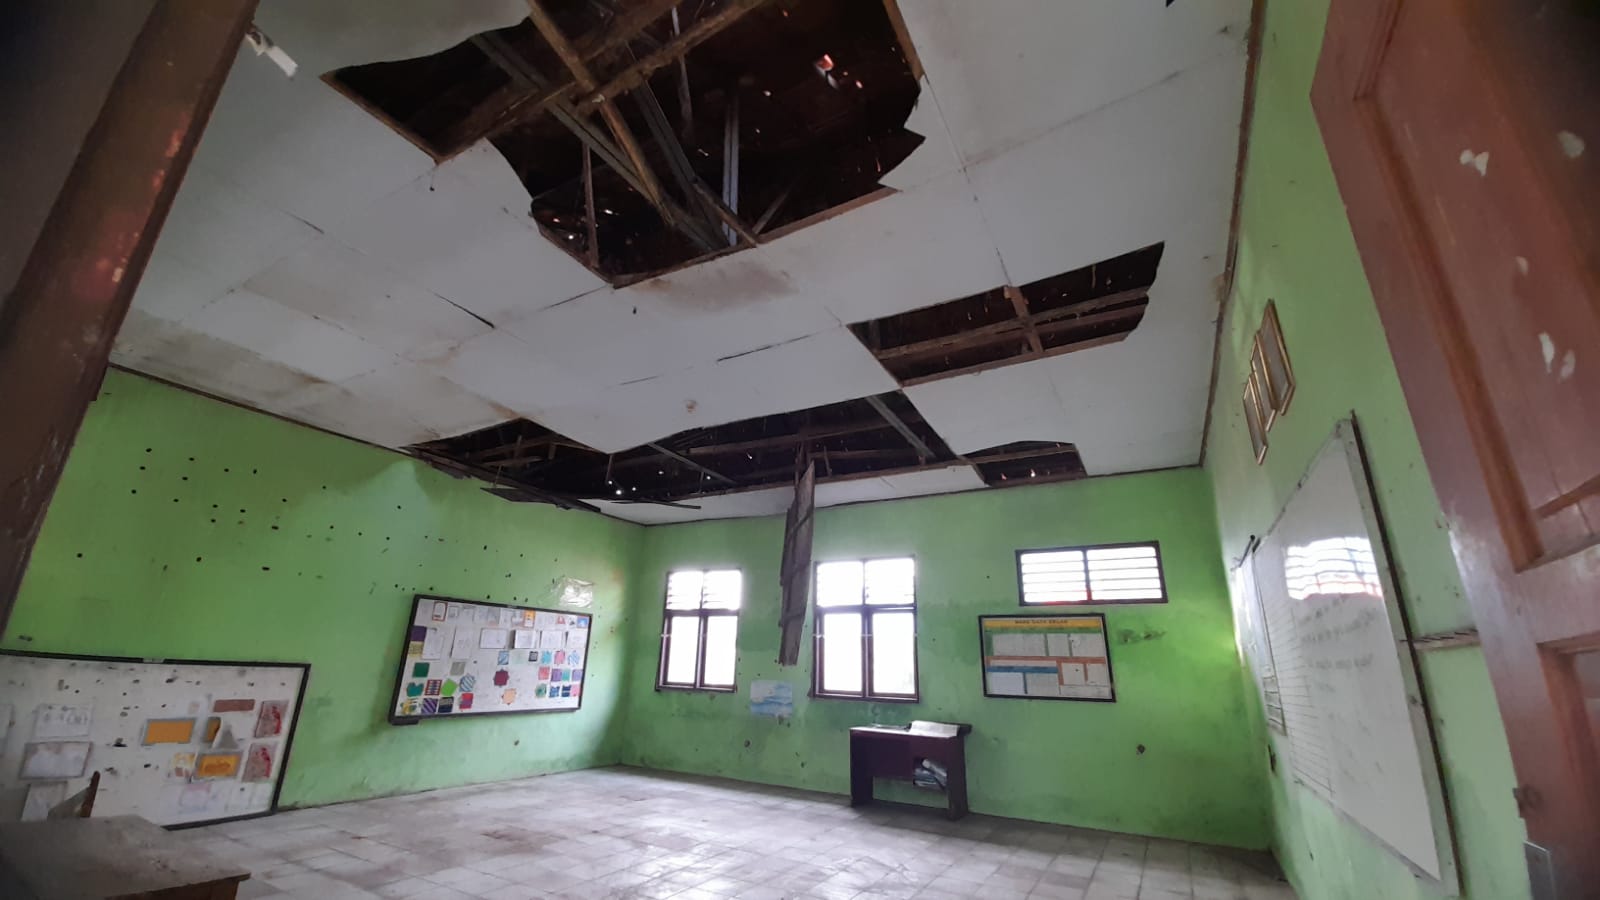 Atap Ruang Kelas SDN Cigabus Ambrol, Pihak Sekolah Ngaku Sudah Sejak 2018 Lapor ke Dindikbud Kota Serang